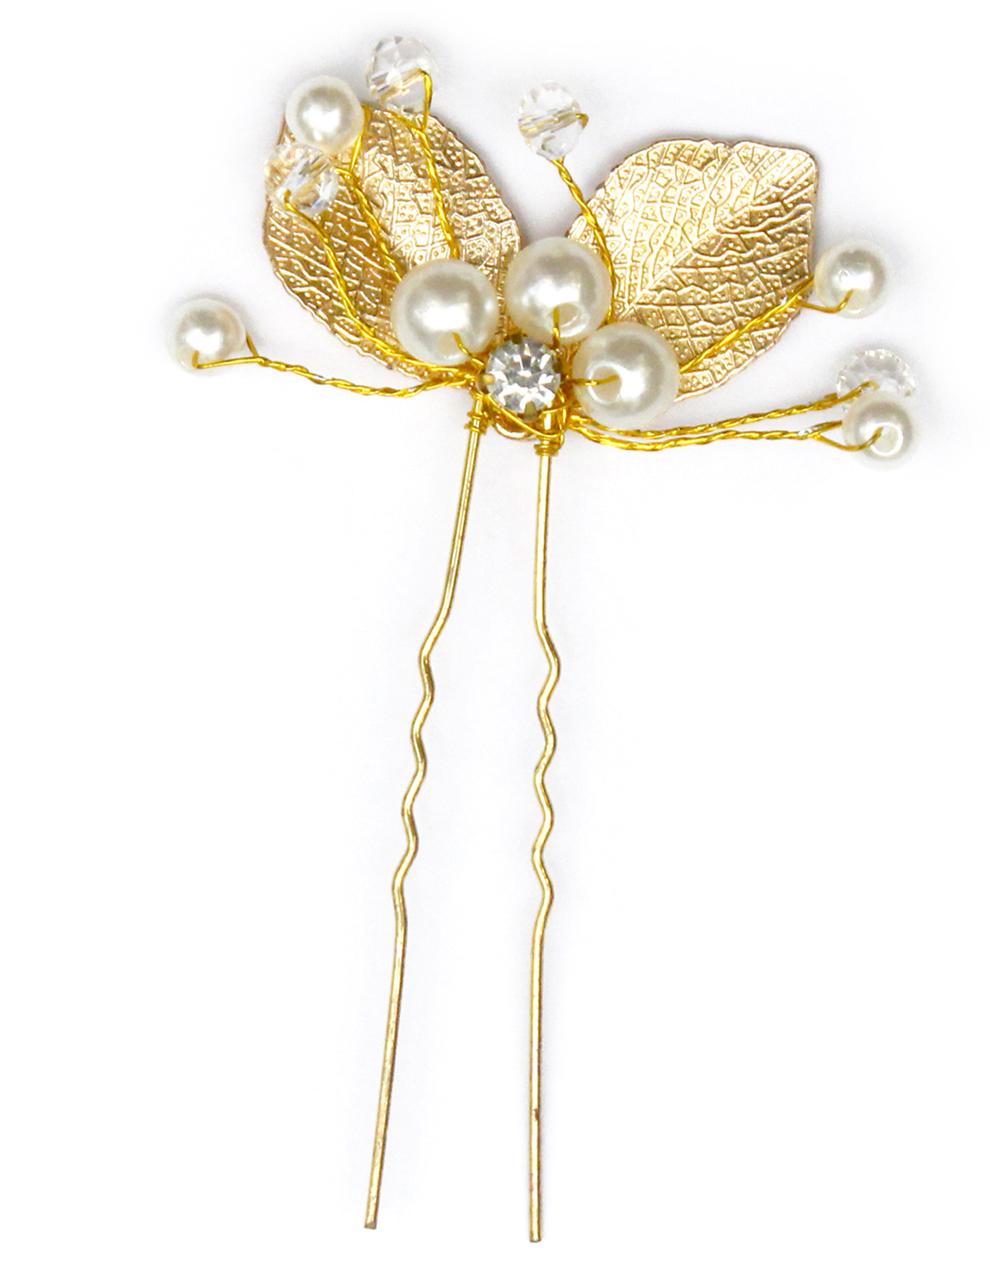 DesiButik's Beautiful 1 Pc Golden Hair pin for Bride & Bridesmaid HA1031